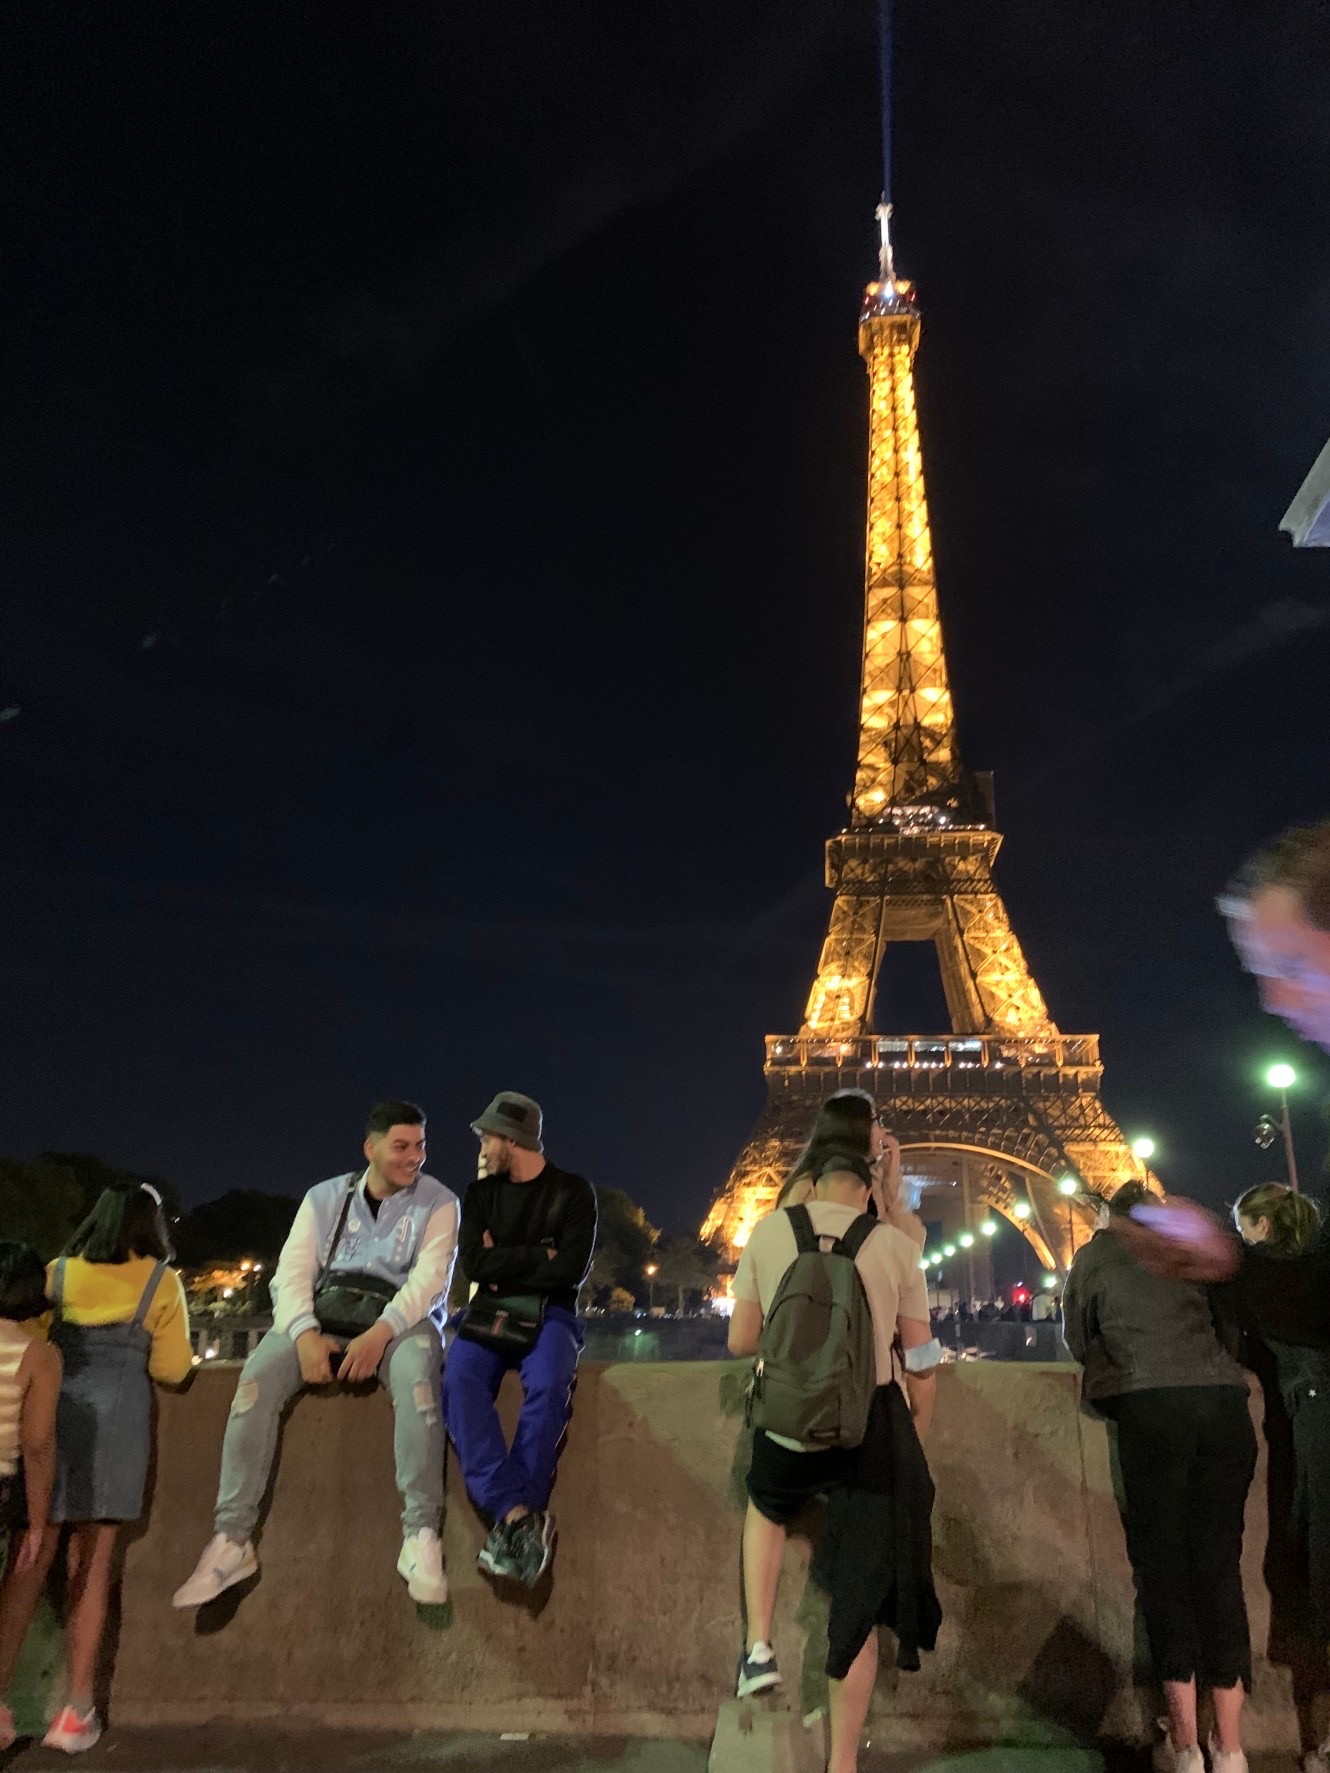 退屈日記「パリの夜散歩。エッフェル塔の袂は大勢の人で賑わっていた」